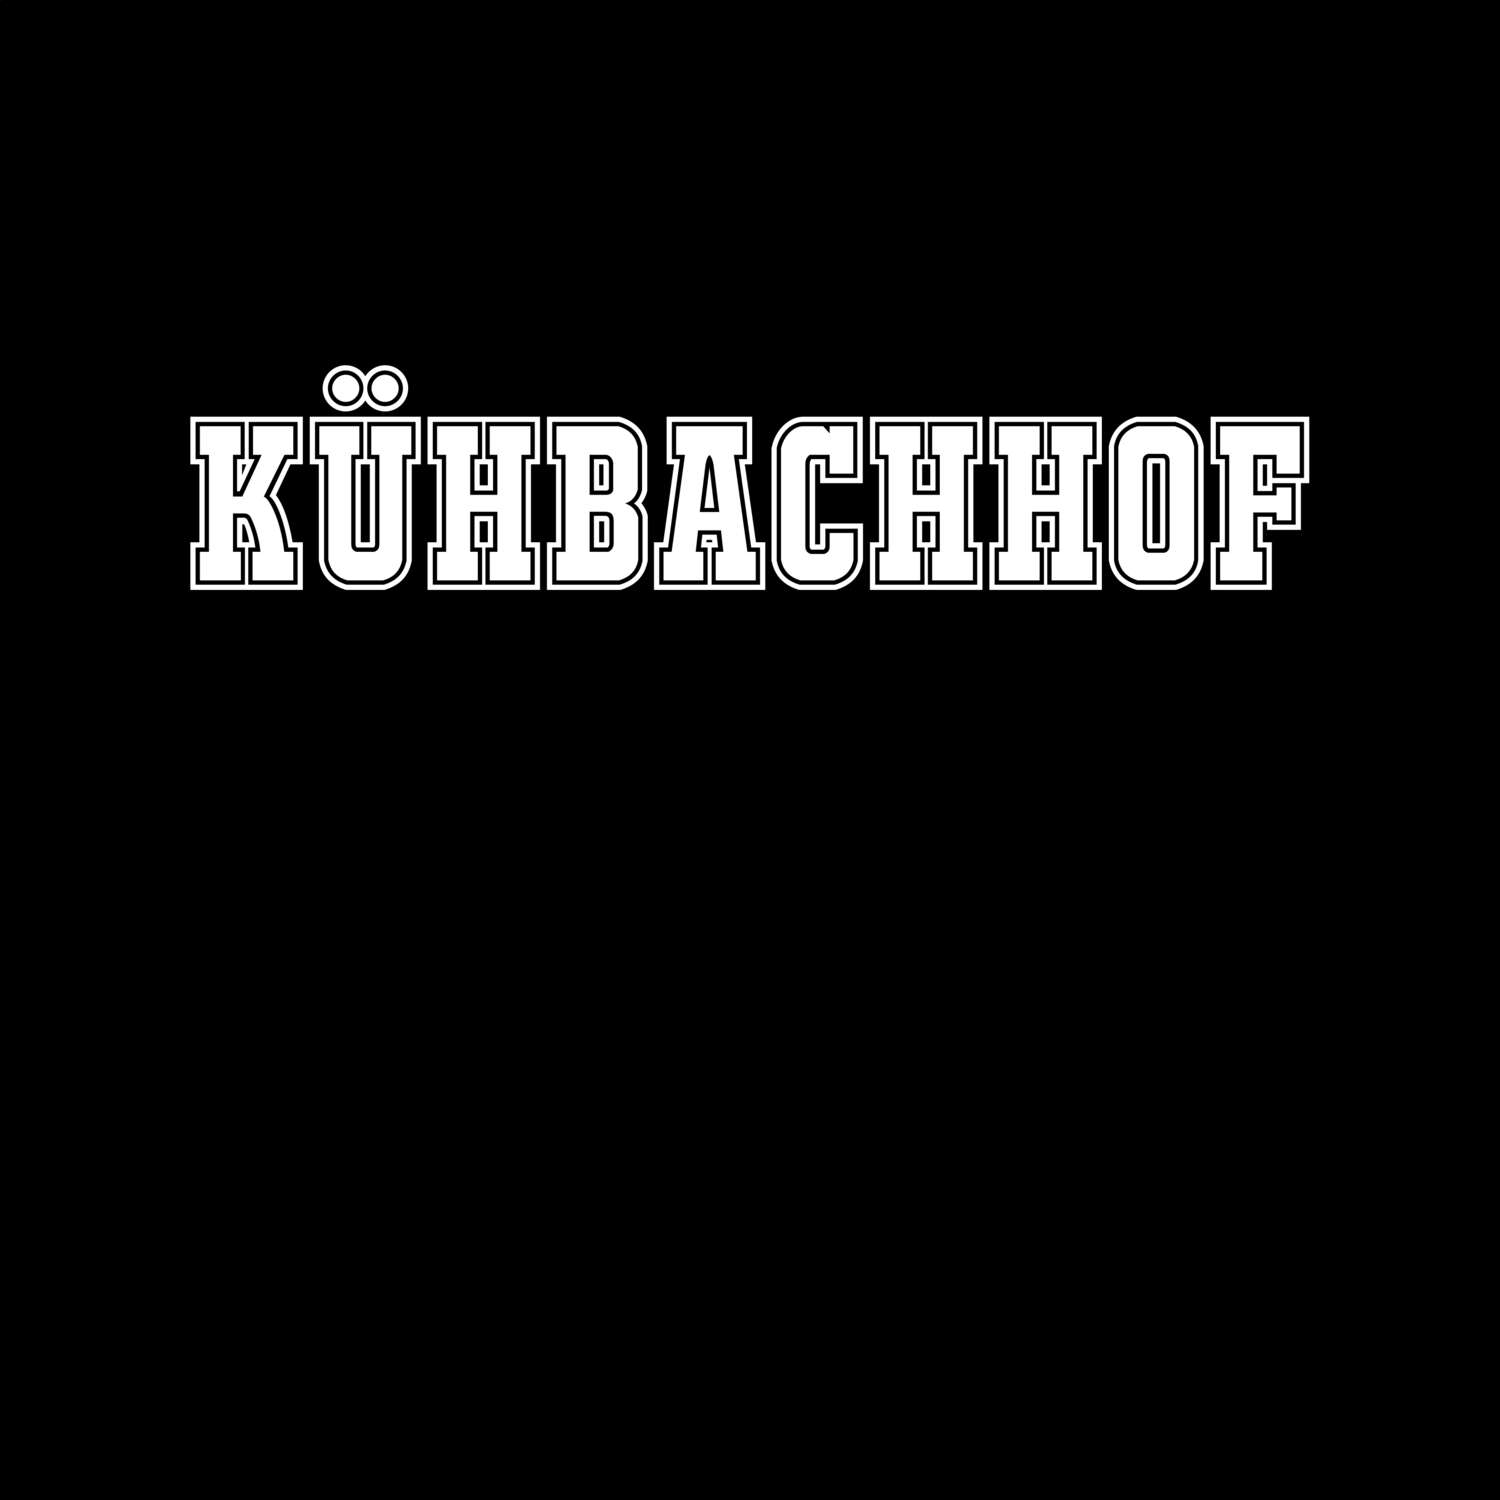 Kühbachhof T-Shirt »Classic«